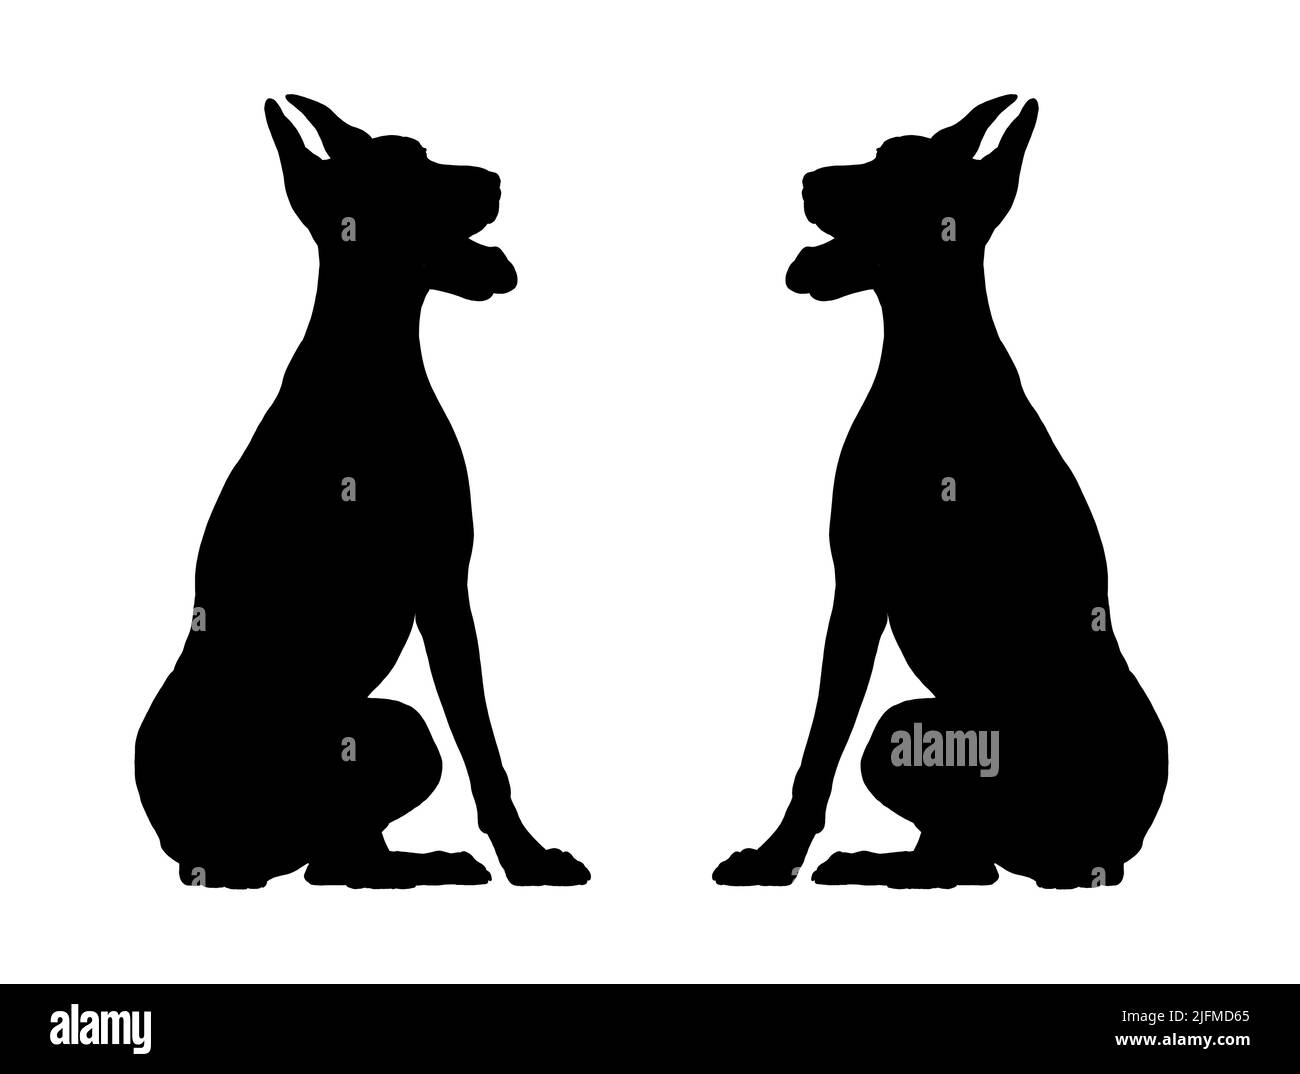 Silhouette des Dobermanns. Isolierte Illustration mit dem eleganten Hund. Schwarze Doberman Pinscher Zeichnung. Stockfoto